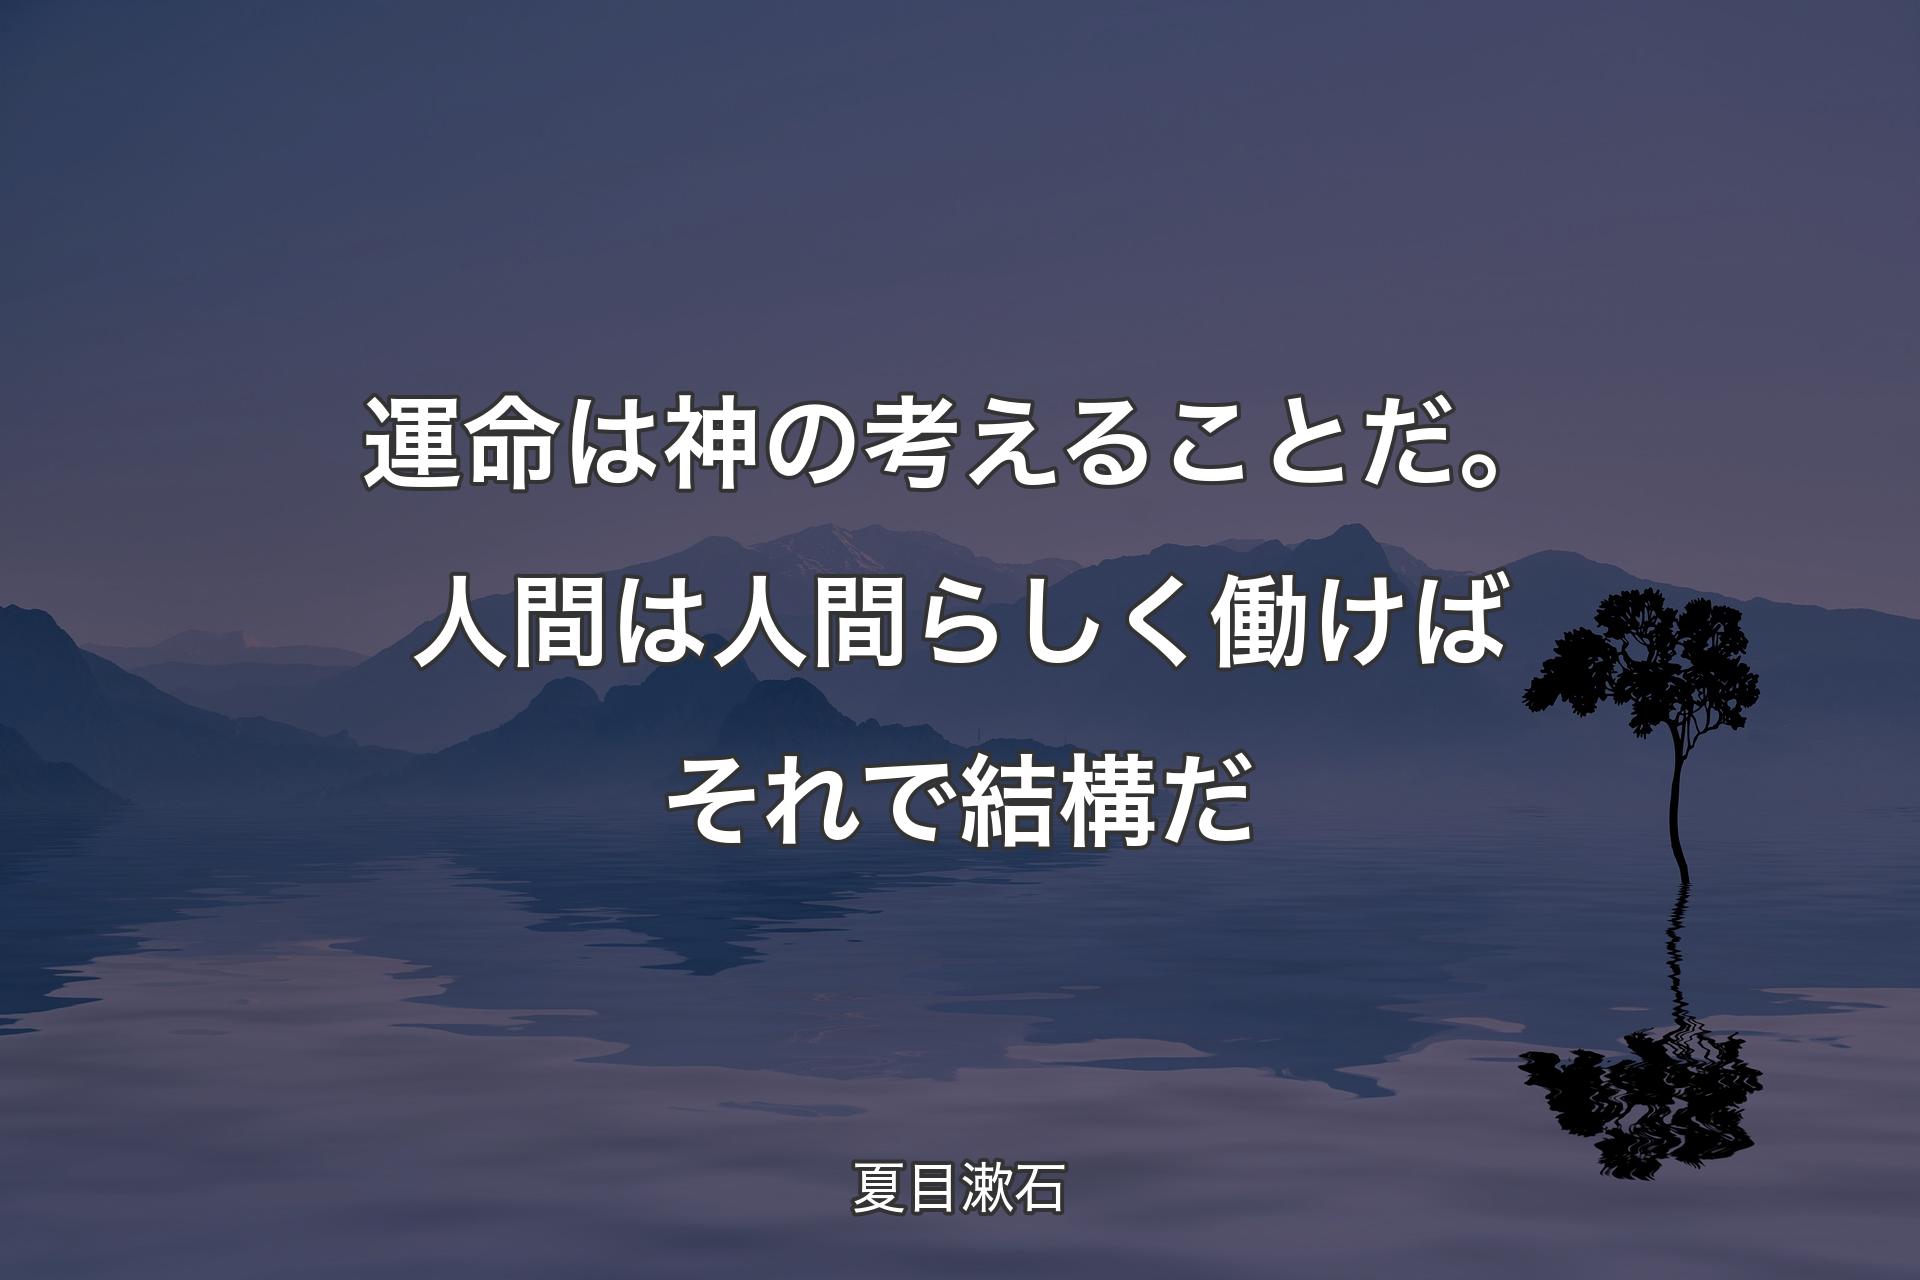 【背景4】運命�は神の考えることだ。 人間は人間らしく働けば それで結構だ - 夏目漱石